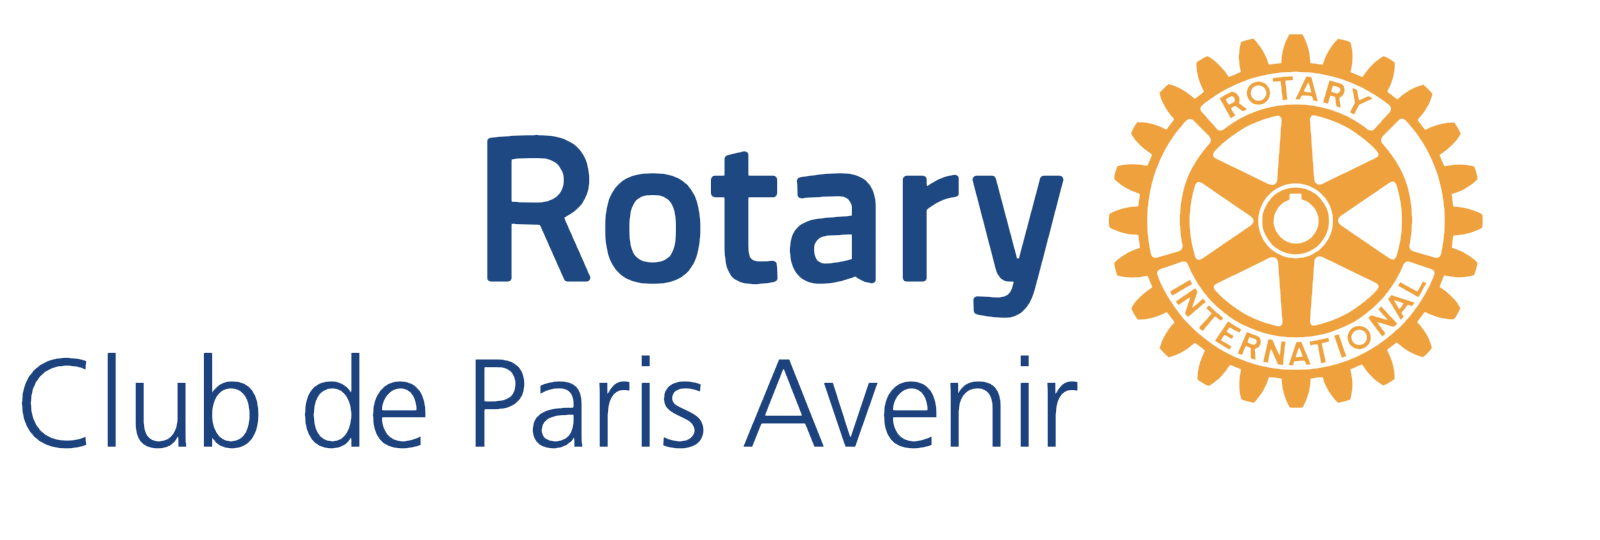 Logo Rotary Club de Paris Avenir